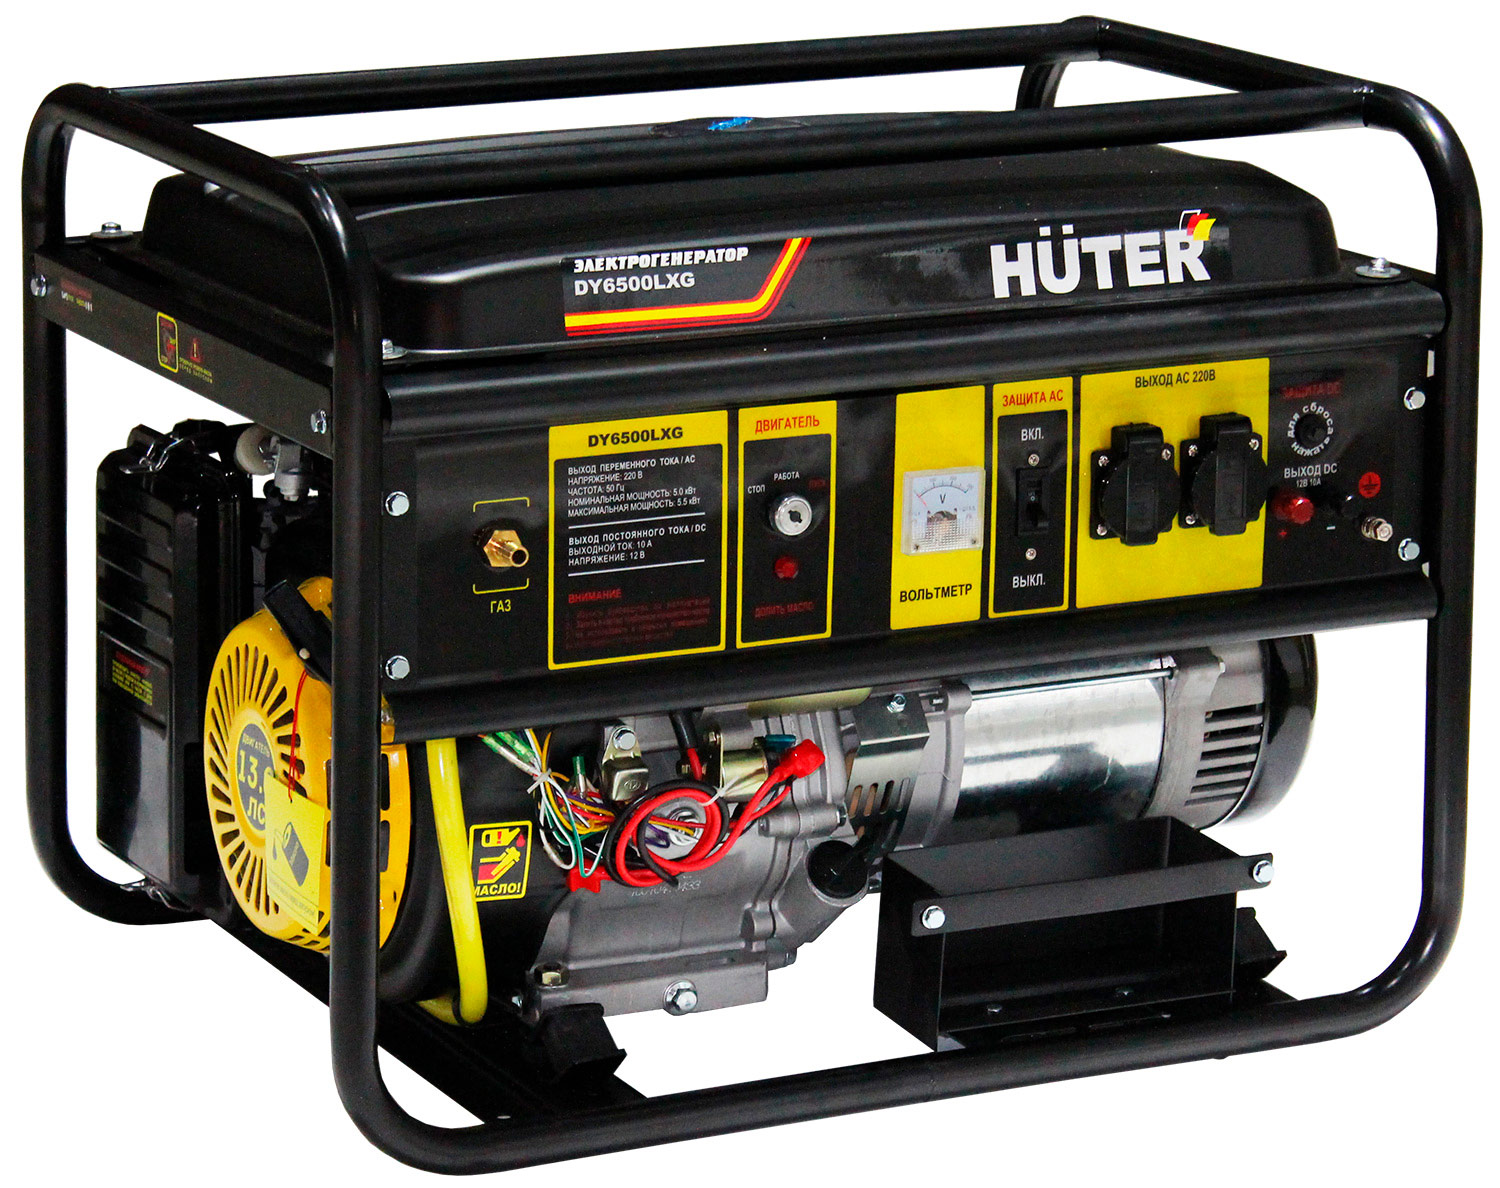 электрический генератор и электростанция huter dy5000l Электрический генератор и электростанция Huter DY6500LXG 64/1/32